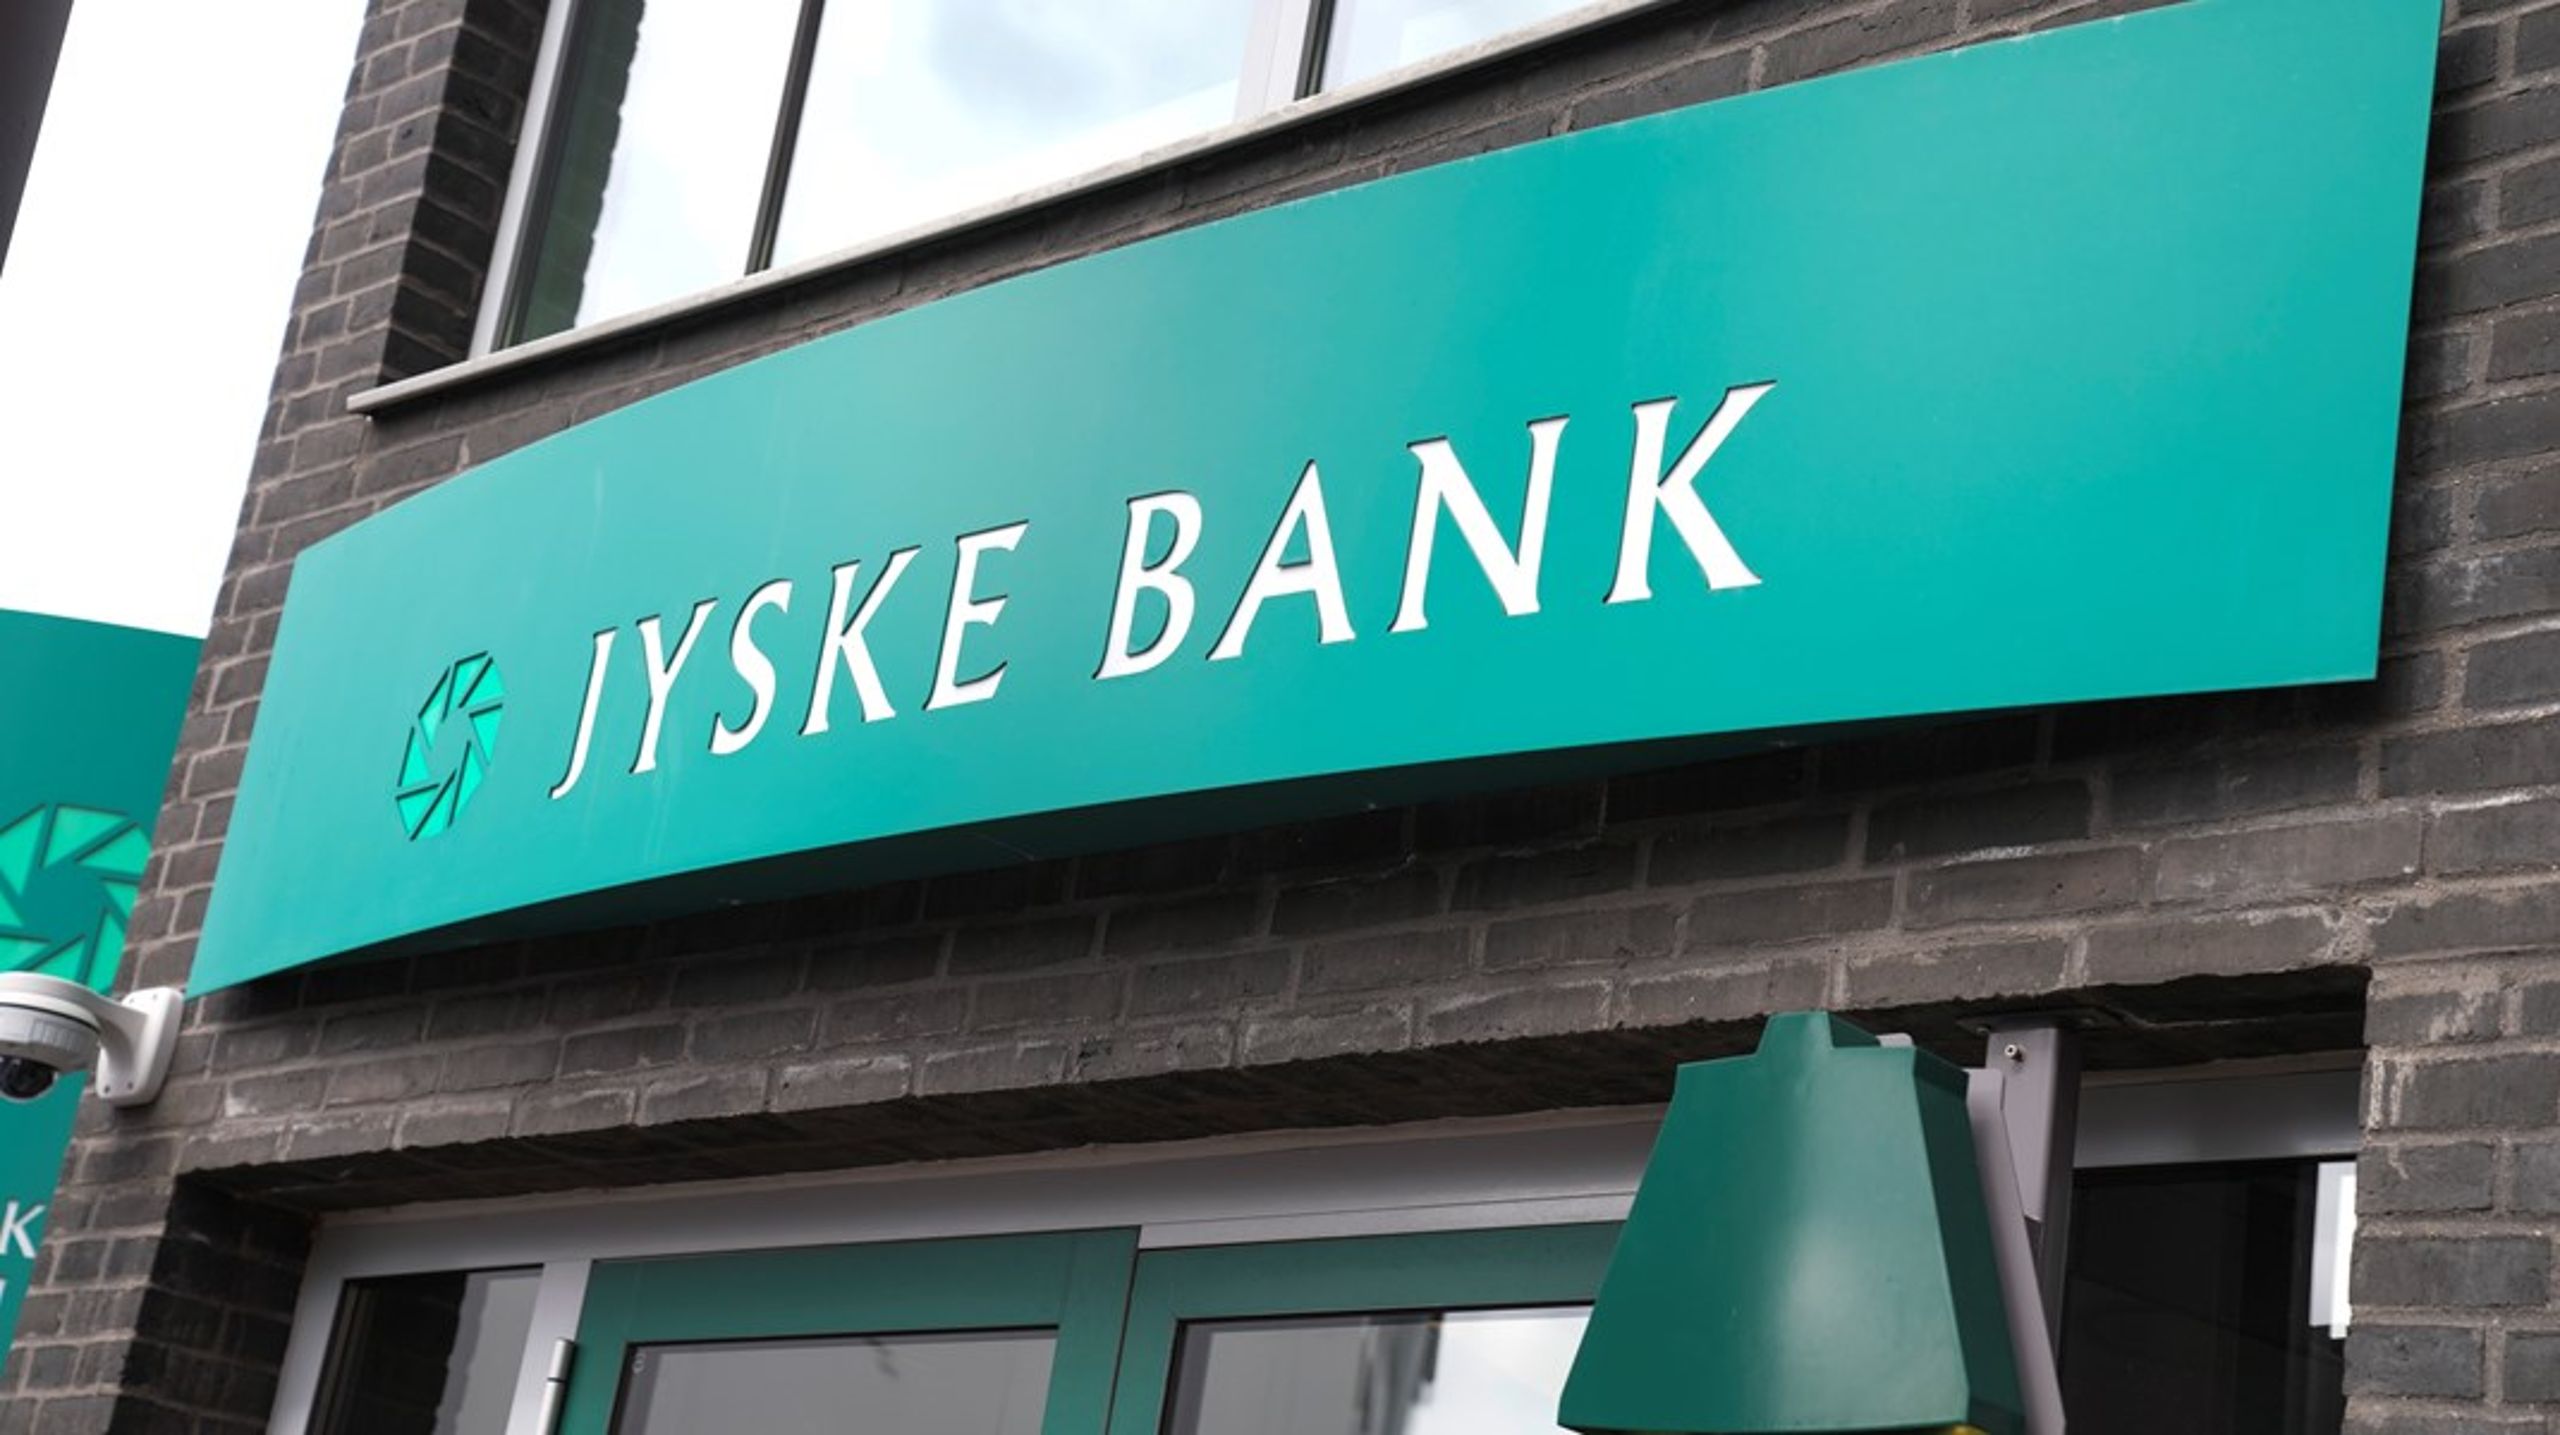 Jyske Bank har efterhånden et langt generalieblad med involvering i blandt andet tvivlsom skatterådgivning og hvidvaskskandaler, skriver Tarek Hussein.